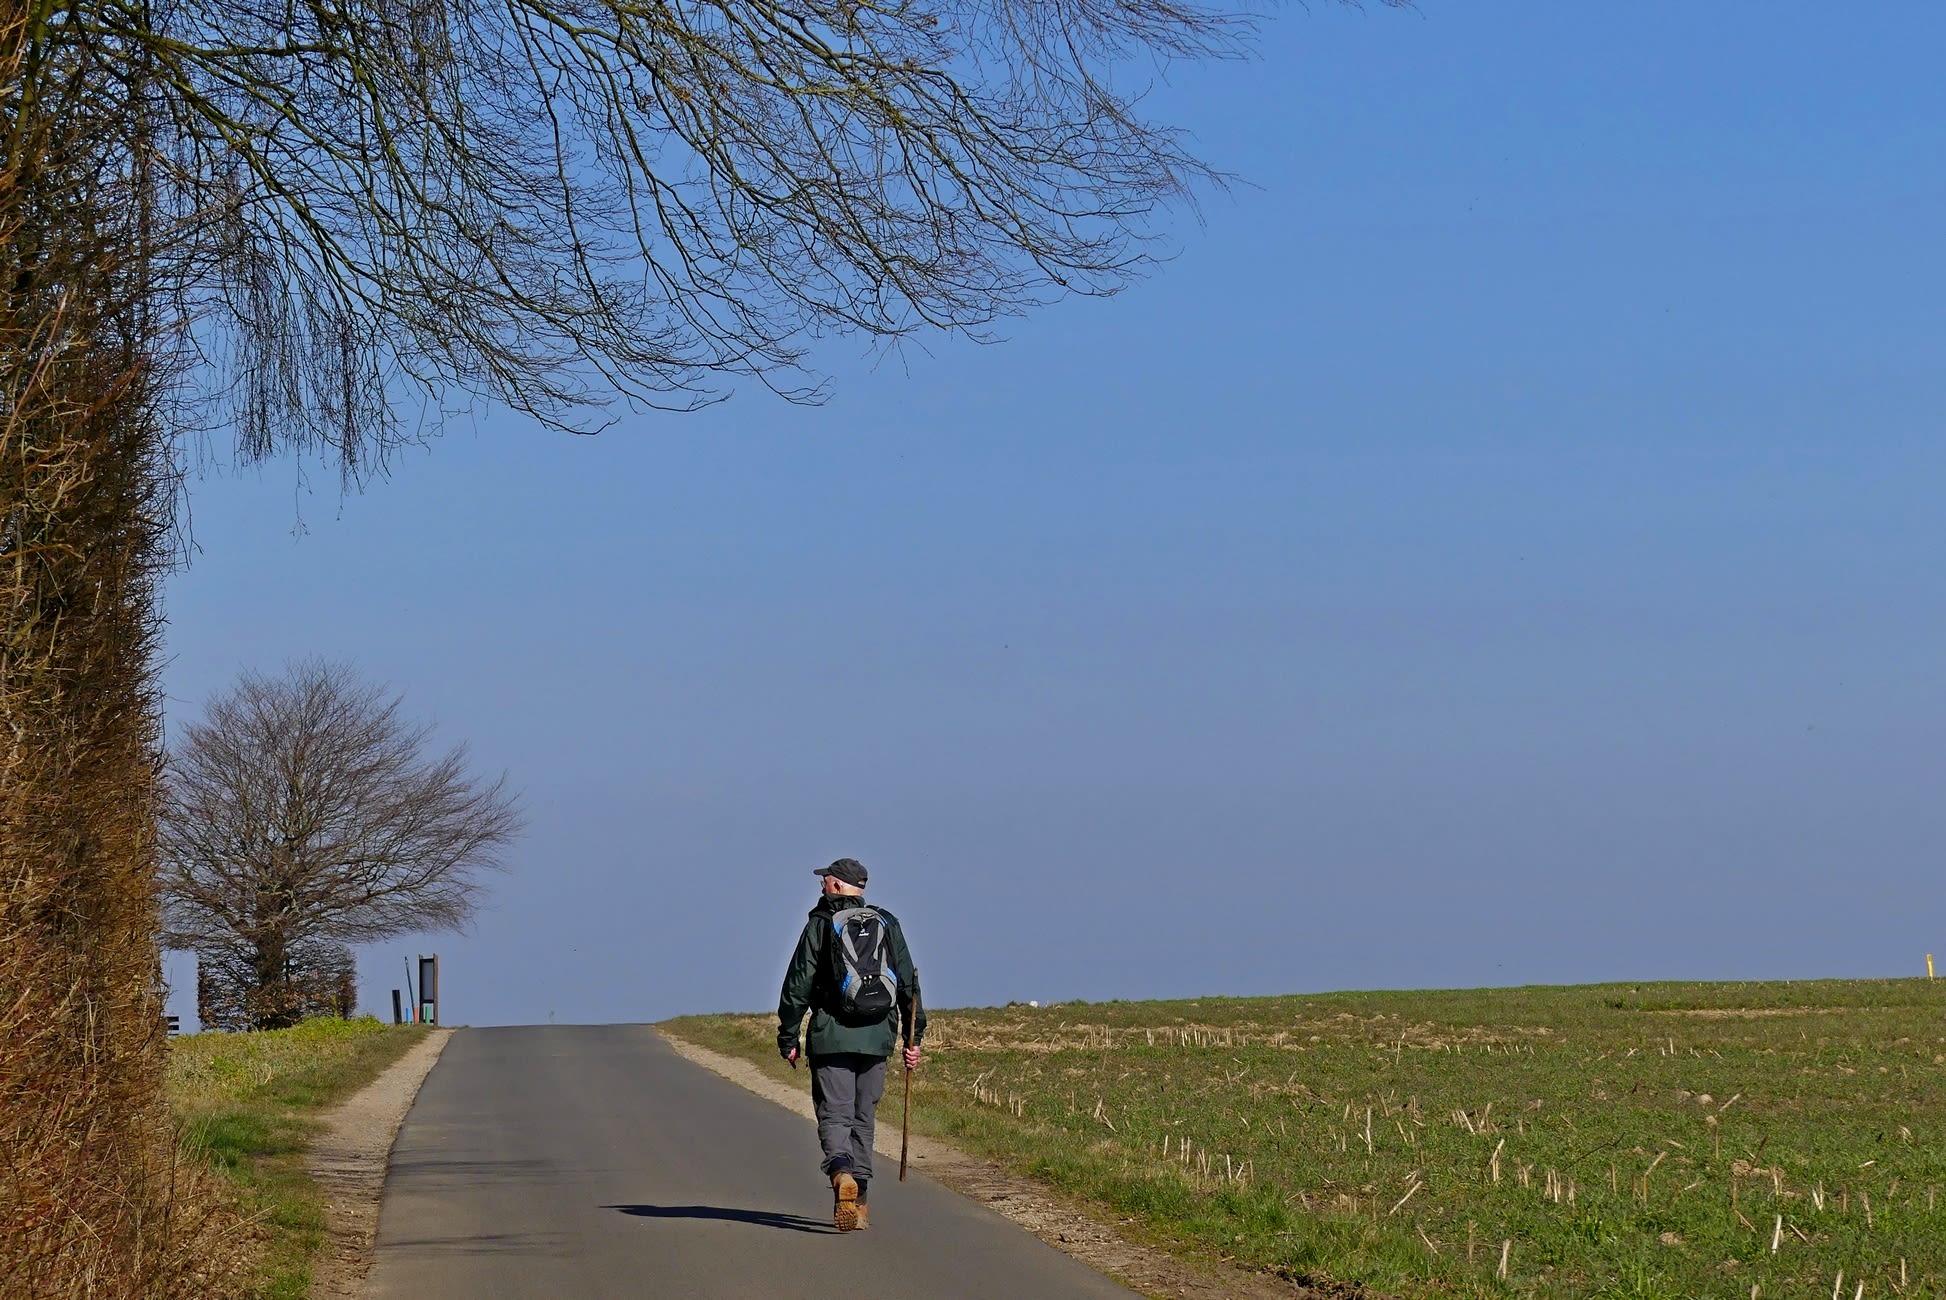 Het is ideaal weer voor een wandeling, zoals hier in de heuvels van Zuid-Limburg. Foto: Marina Nefkens